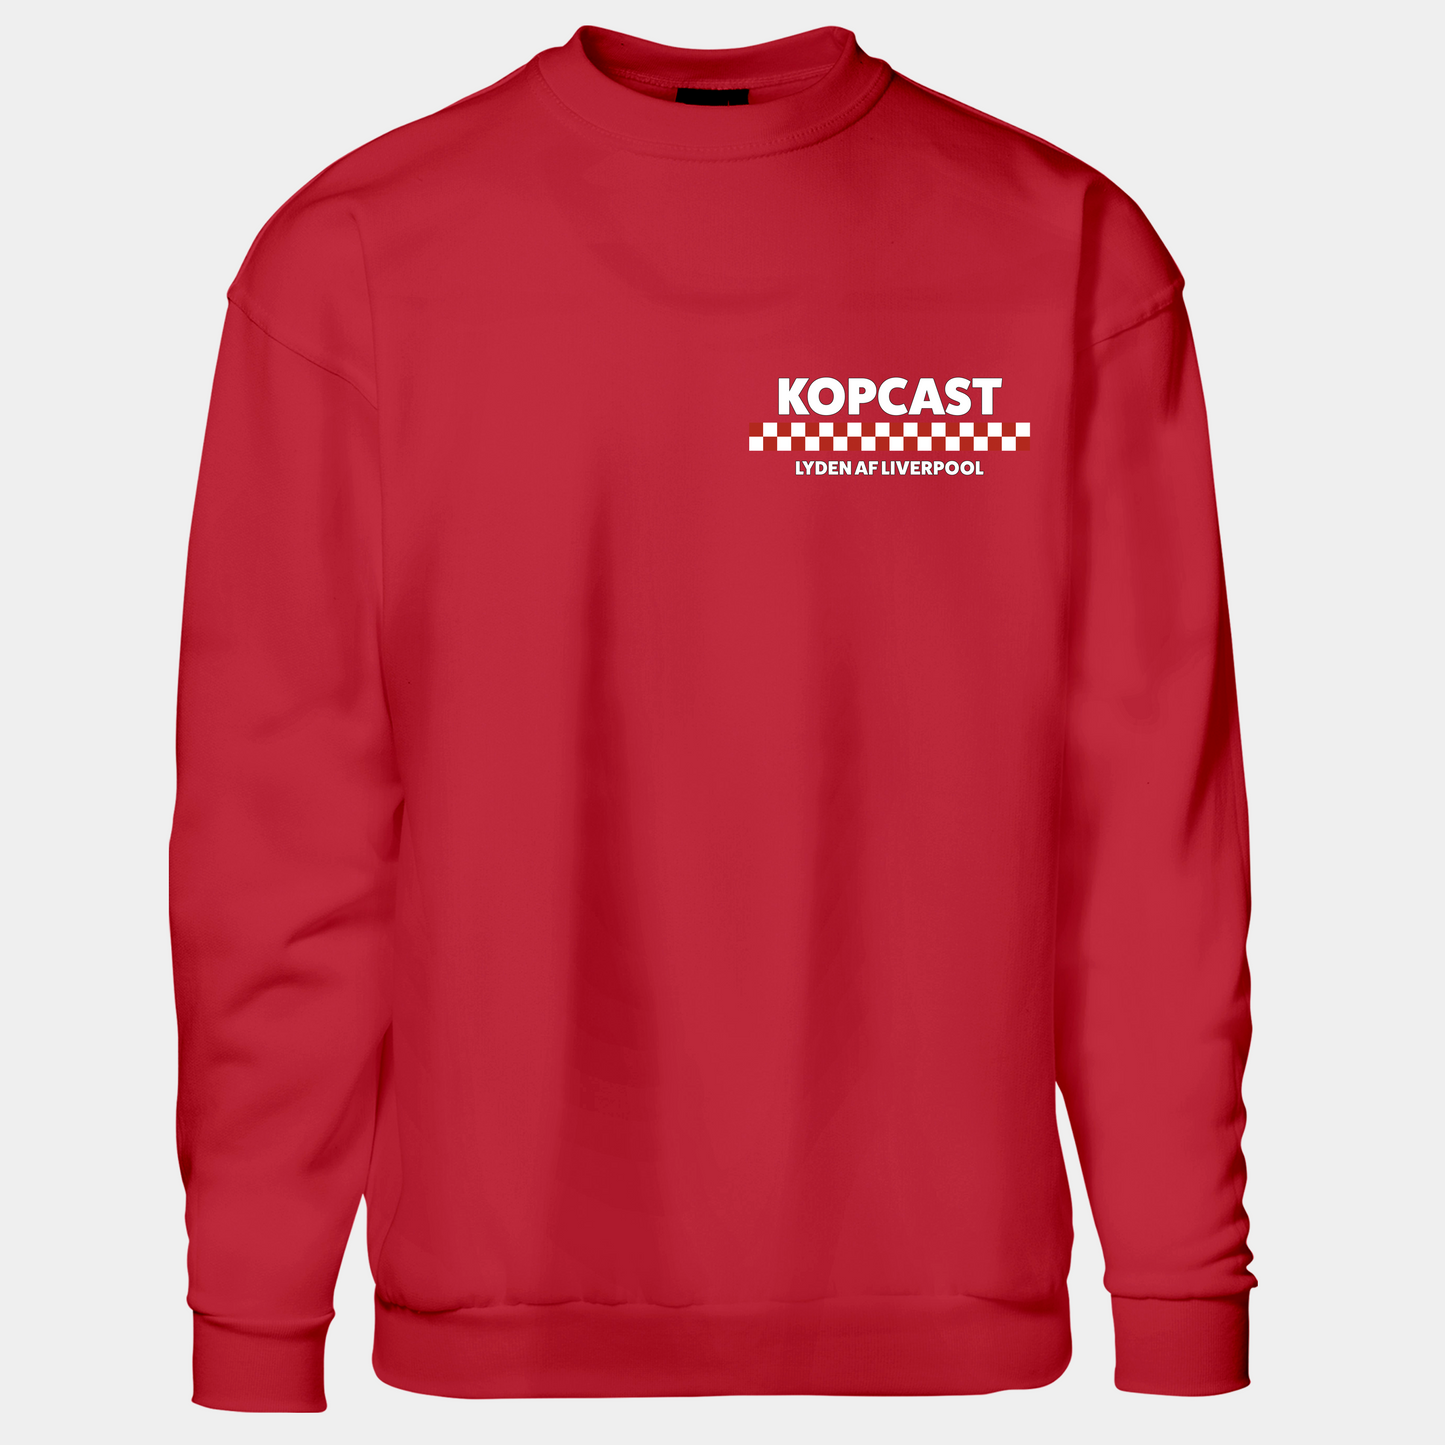 Kopcast - Sweatshirt